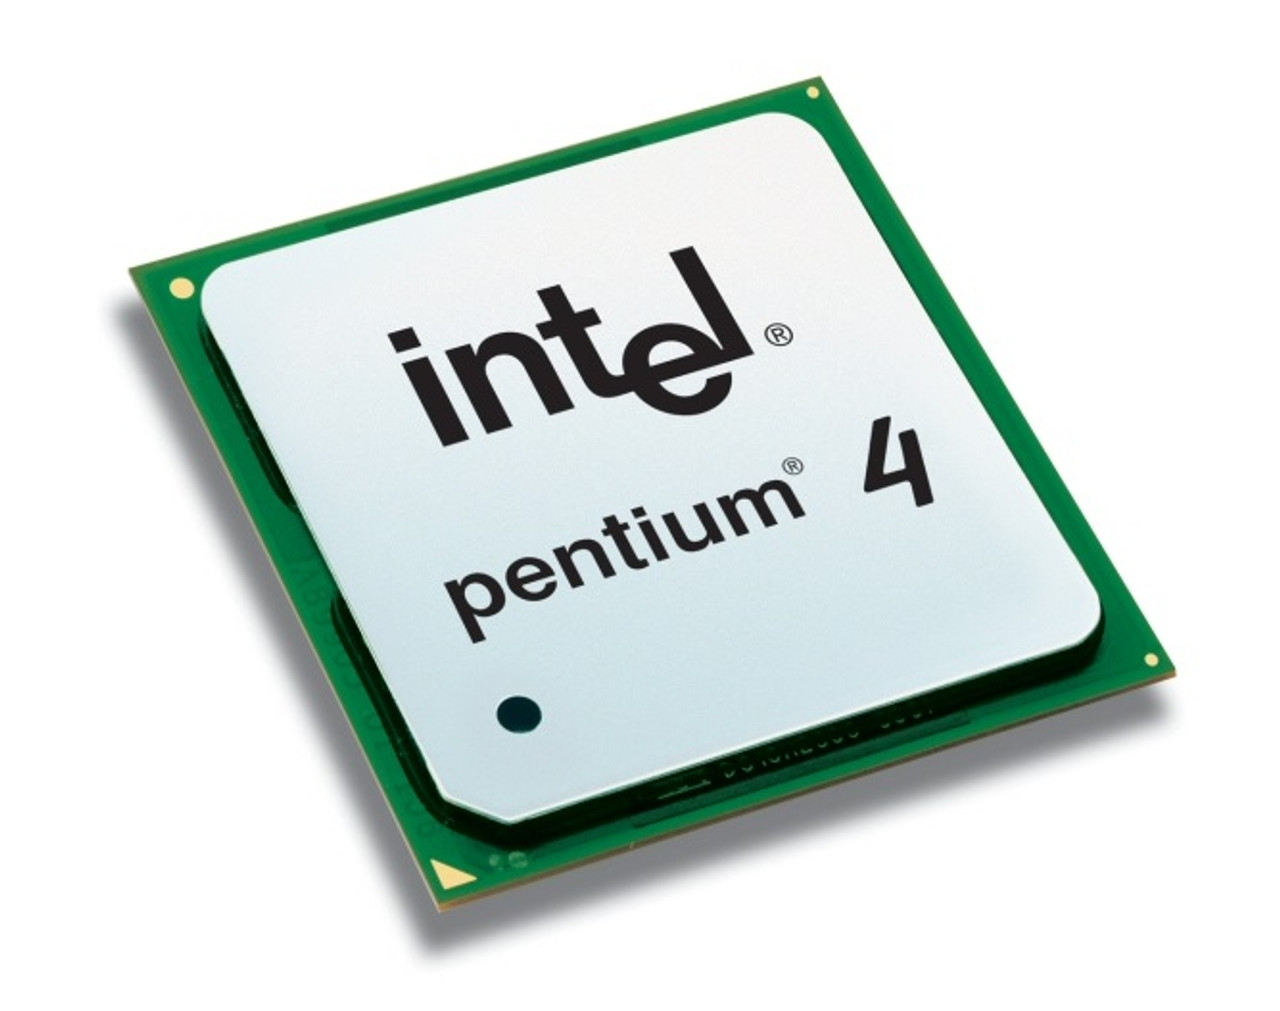 P7587 - Dell 3.06GHz 533MHz FSB 512KB L2 Cache Intel Pentium 4 Mobile Processor for Inspiron 5160